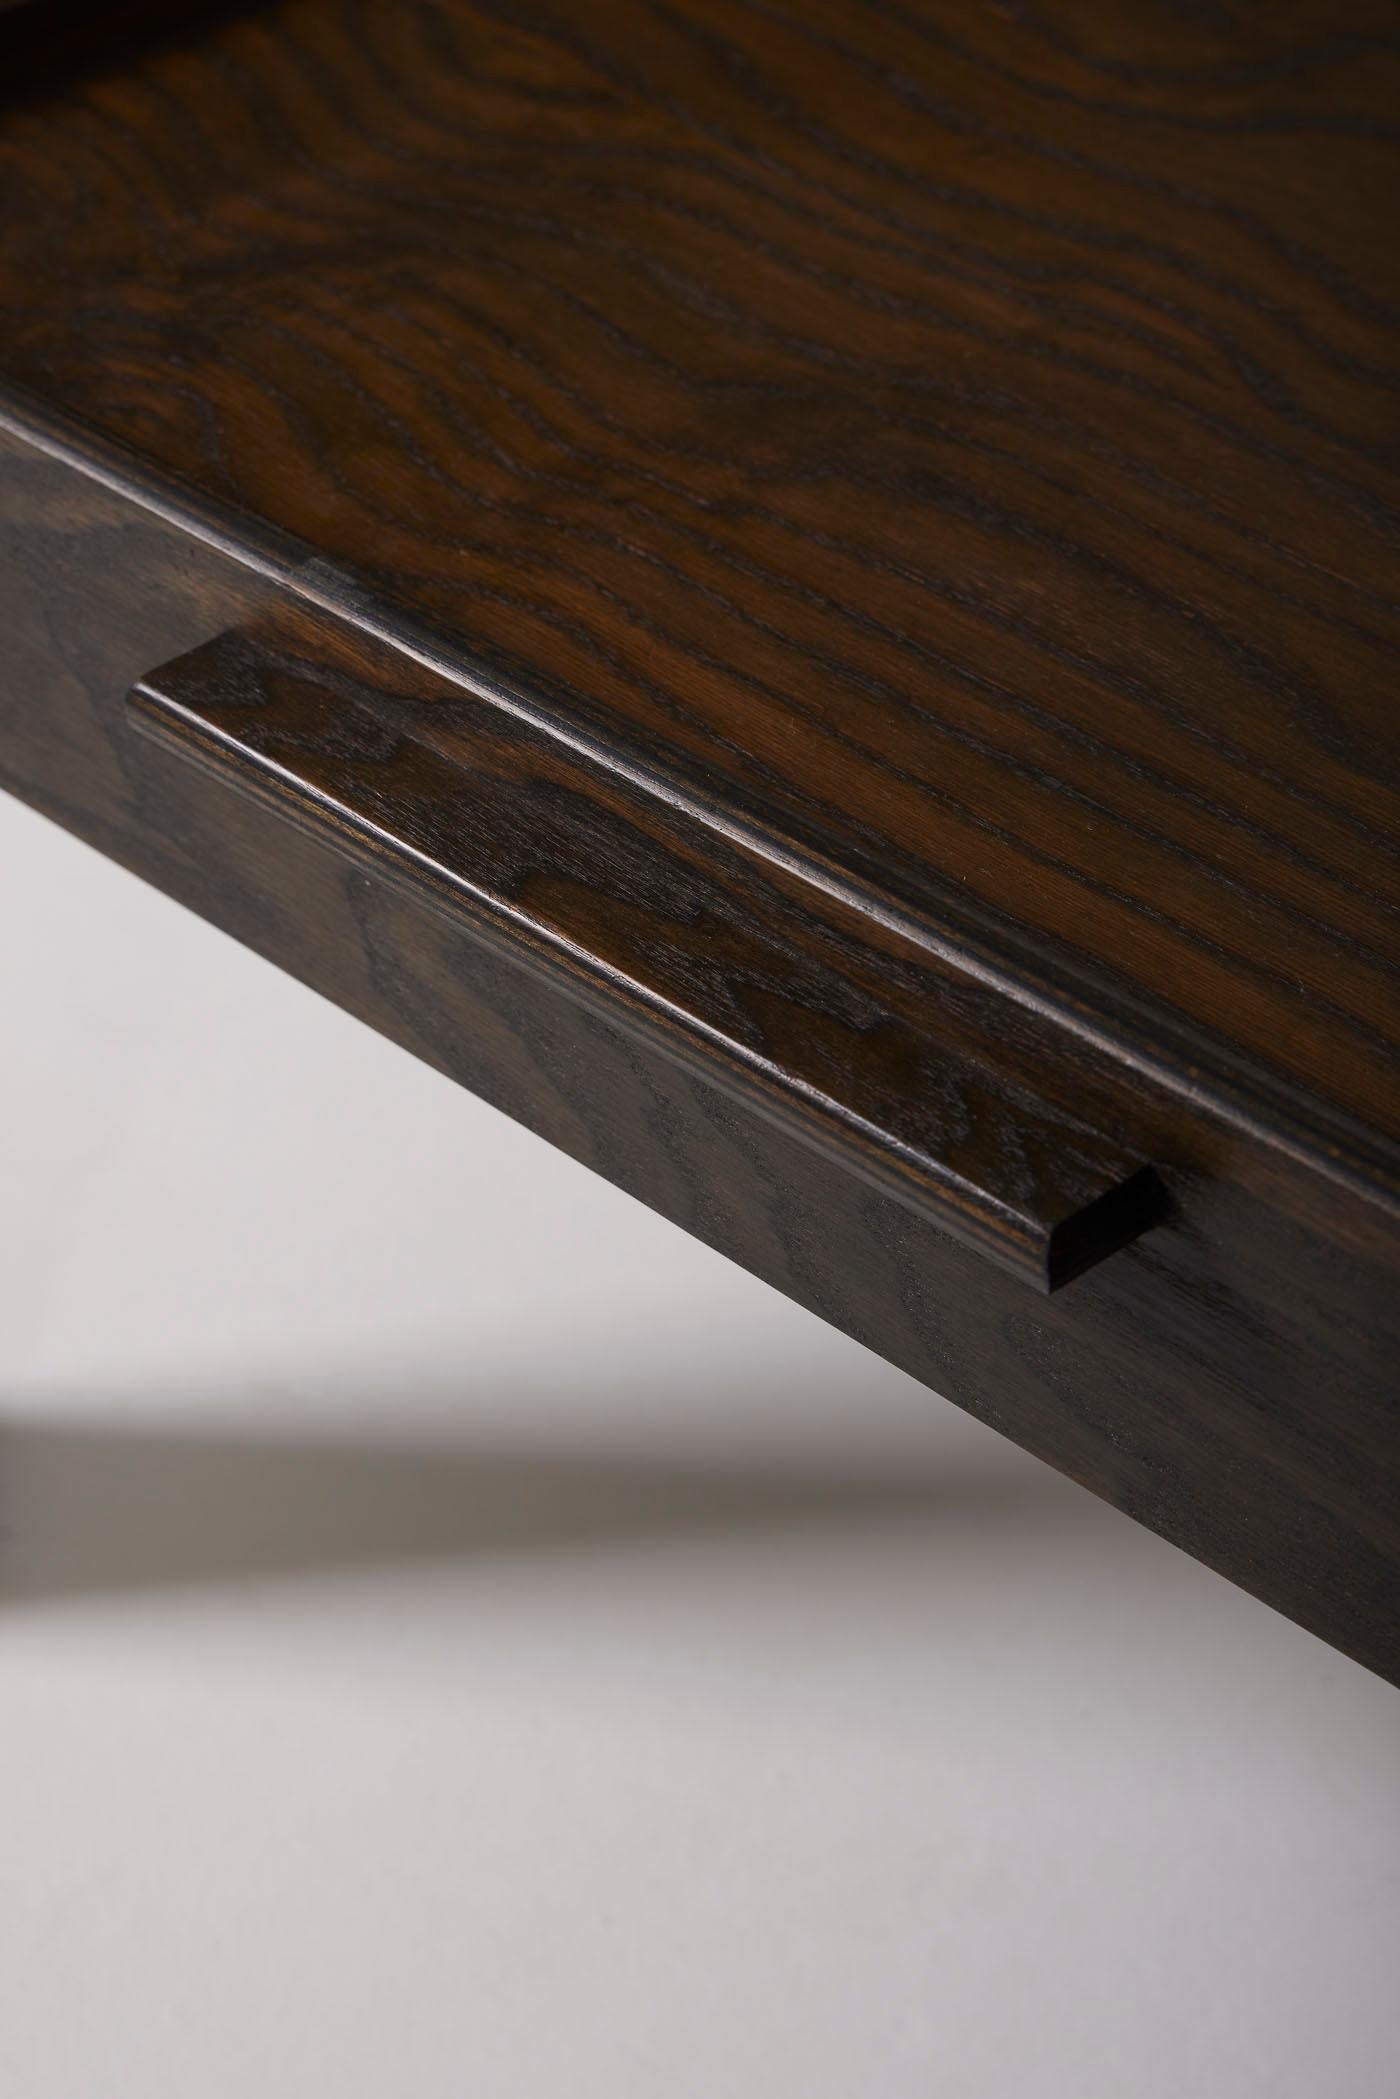 Arne Jacobsen coffee table 3